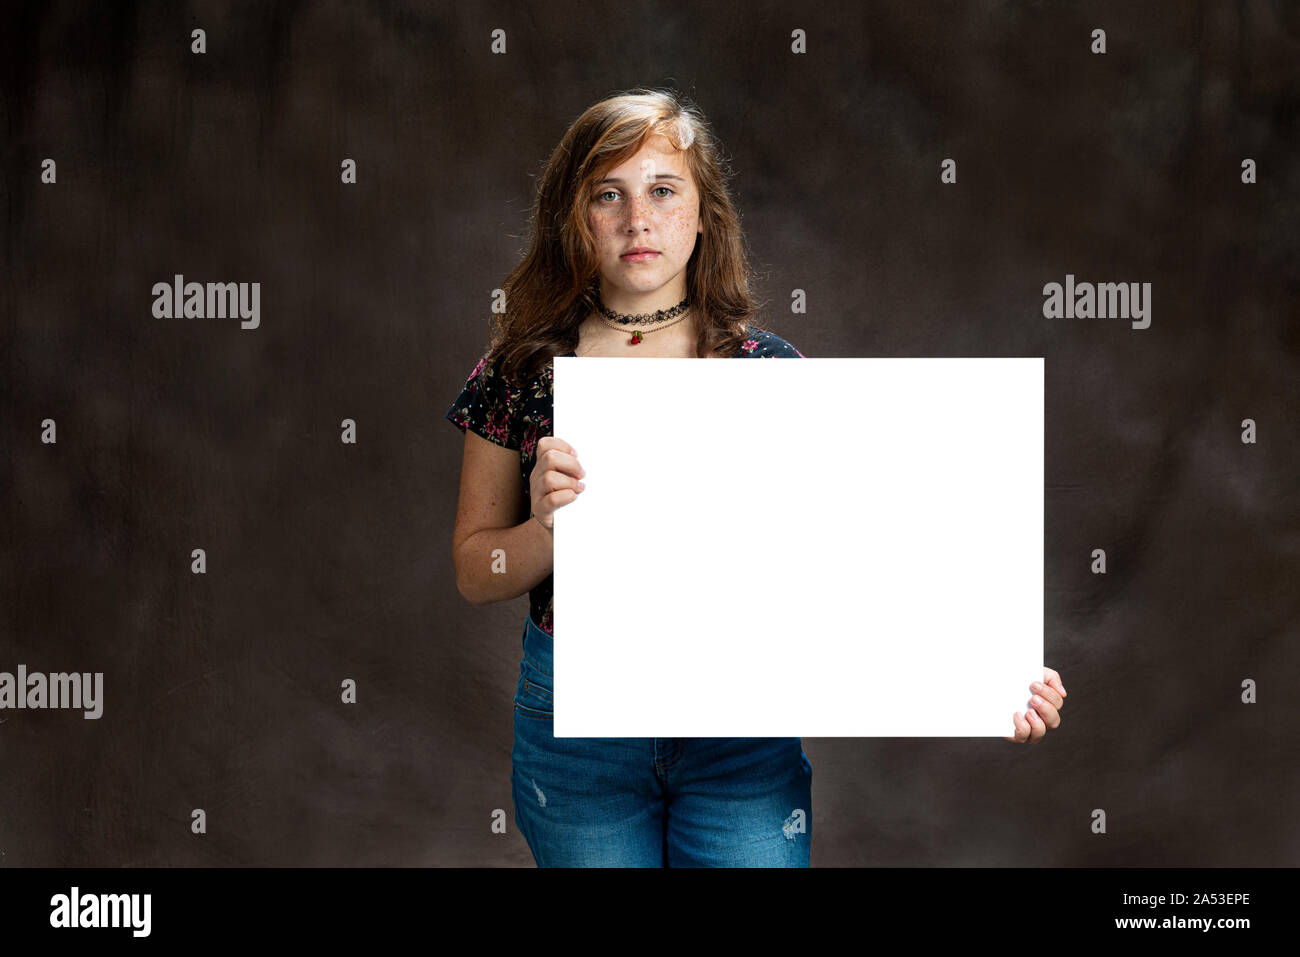 Horizontale studio Aufnahme eines ernsthaften Suchen vor - jugendlich Mädchen mit Sommersprossen Holding ein leeres weißes Schild. Braunen Hintergrund. Kopieren Sie Platz. Stockfoto